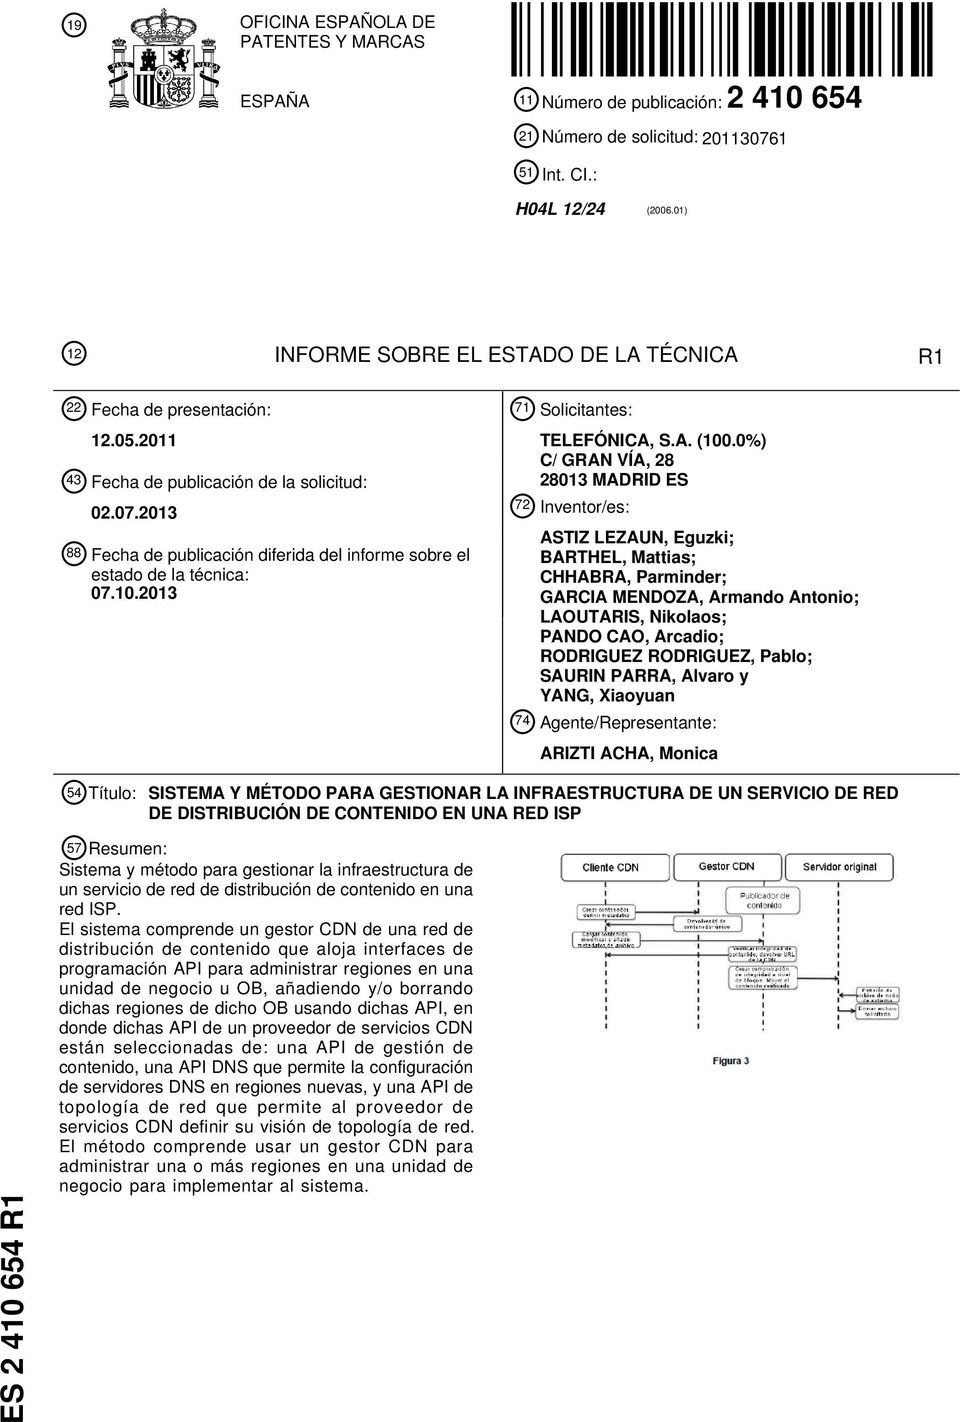 2013 88 Fecha de publicación diferida del informe sobre el estado de la técnica: 07.10.2013 71 Solicitantes: TELEFÓNICA, S.A. (100.